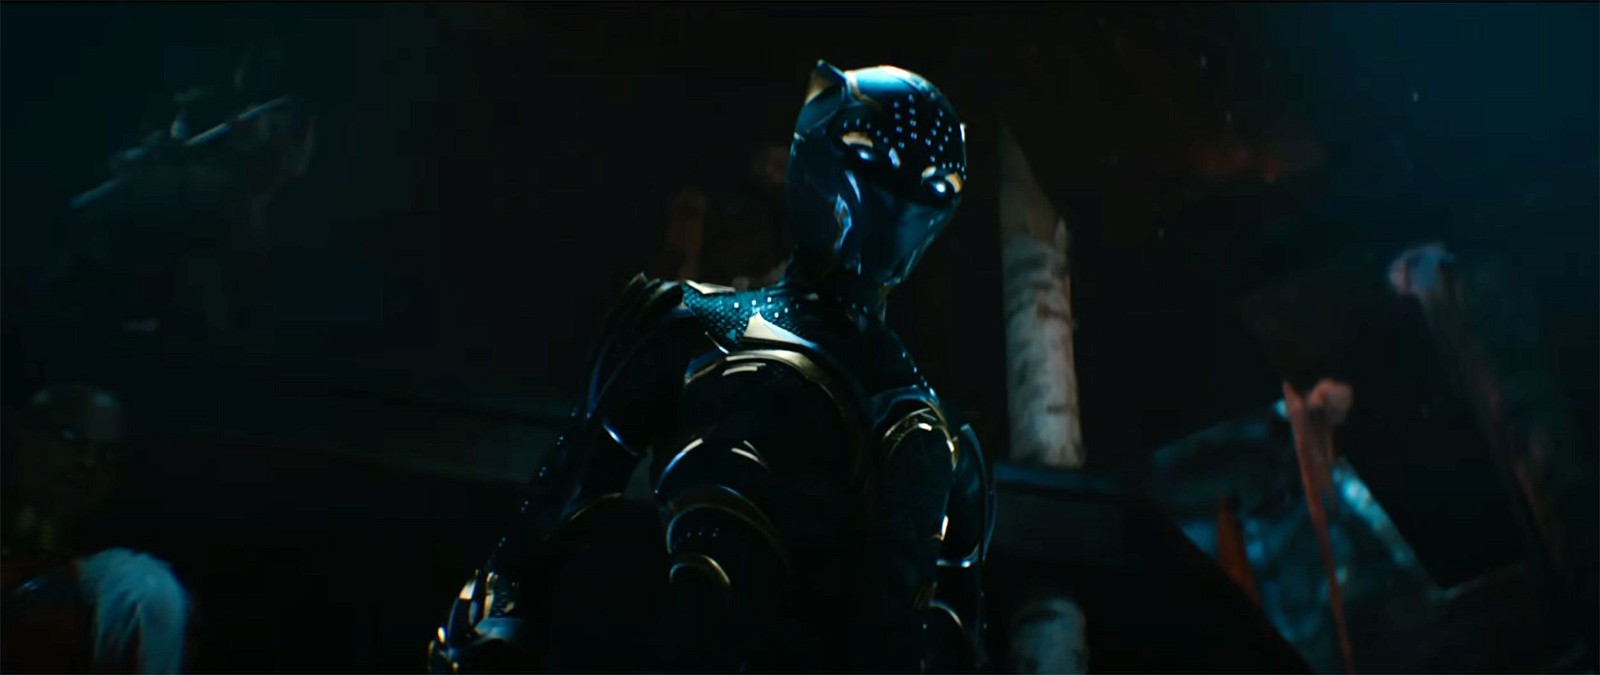 Shuri in Black Panther suit